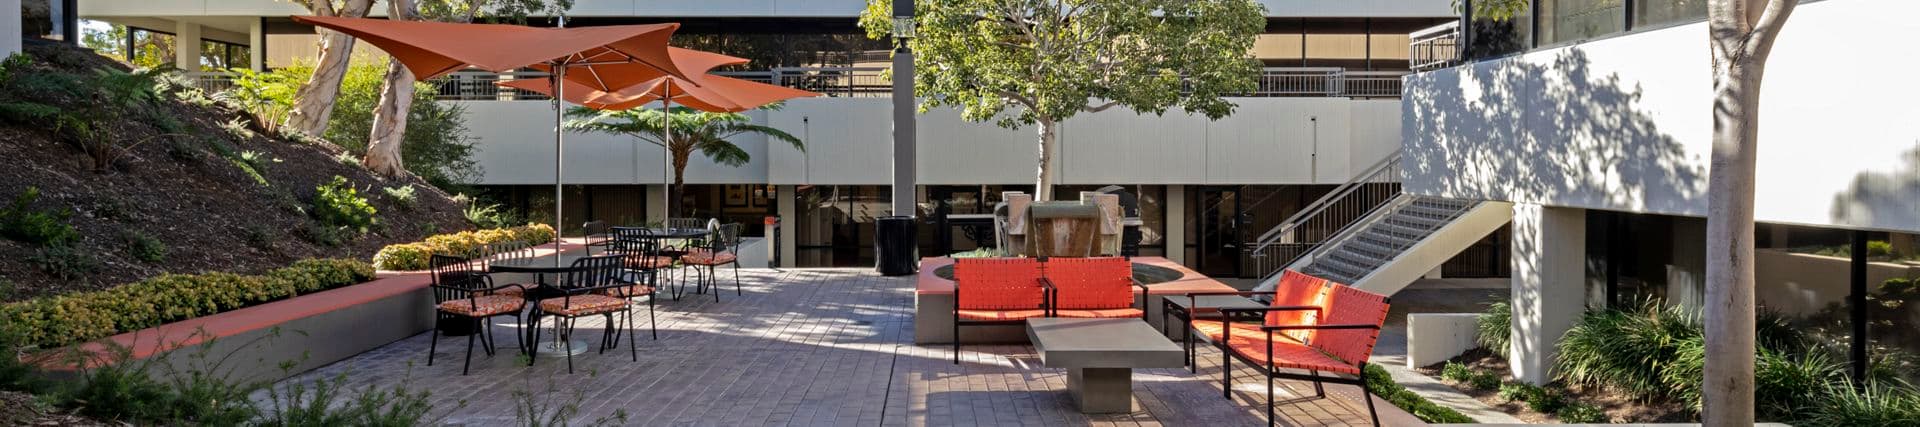 Outdoor Workspace - Gateway Plaza - 110-170 Newport Center Drive  Newport Beach, CA 92660